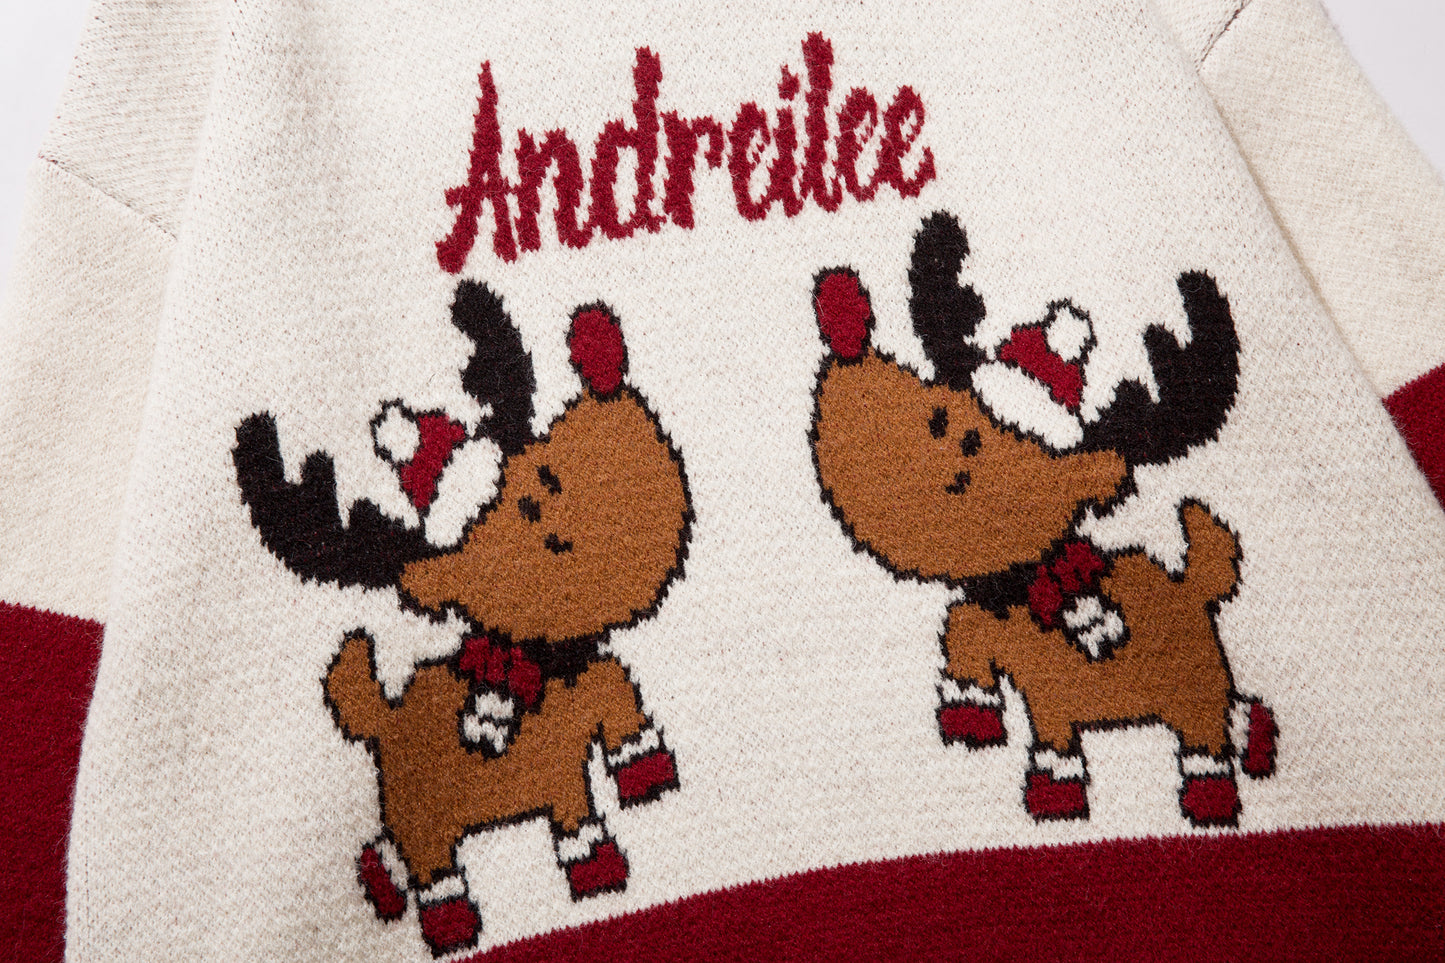 Dancing Reindeer Sweater